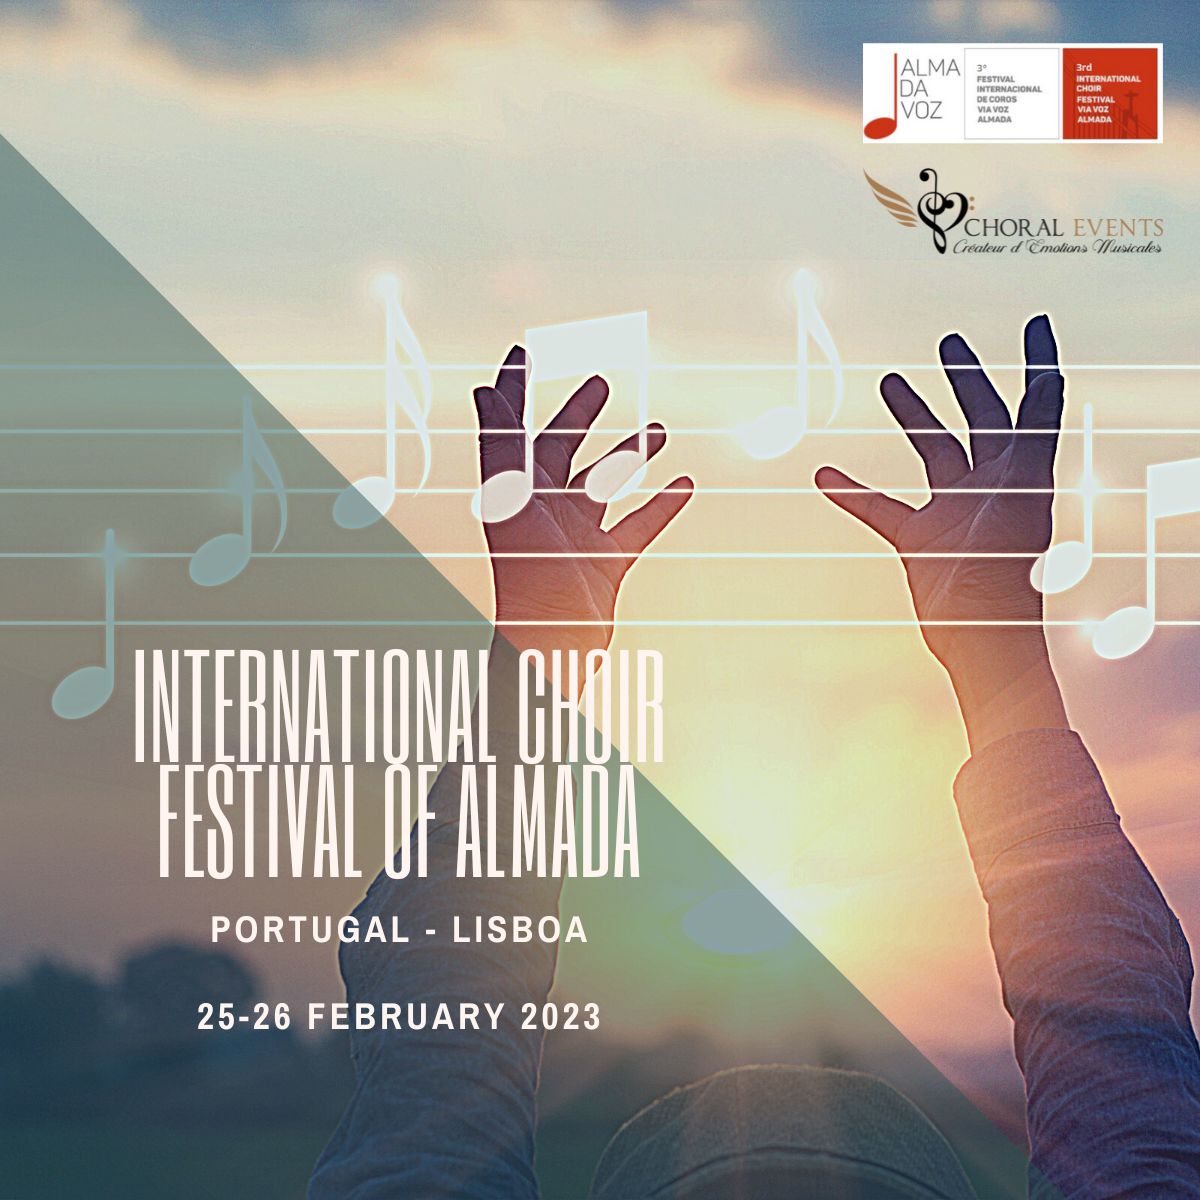 Almada International Choral Festival - Portugal | Choral Events